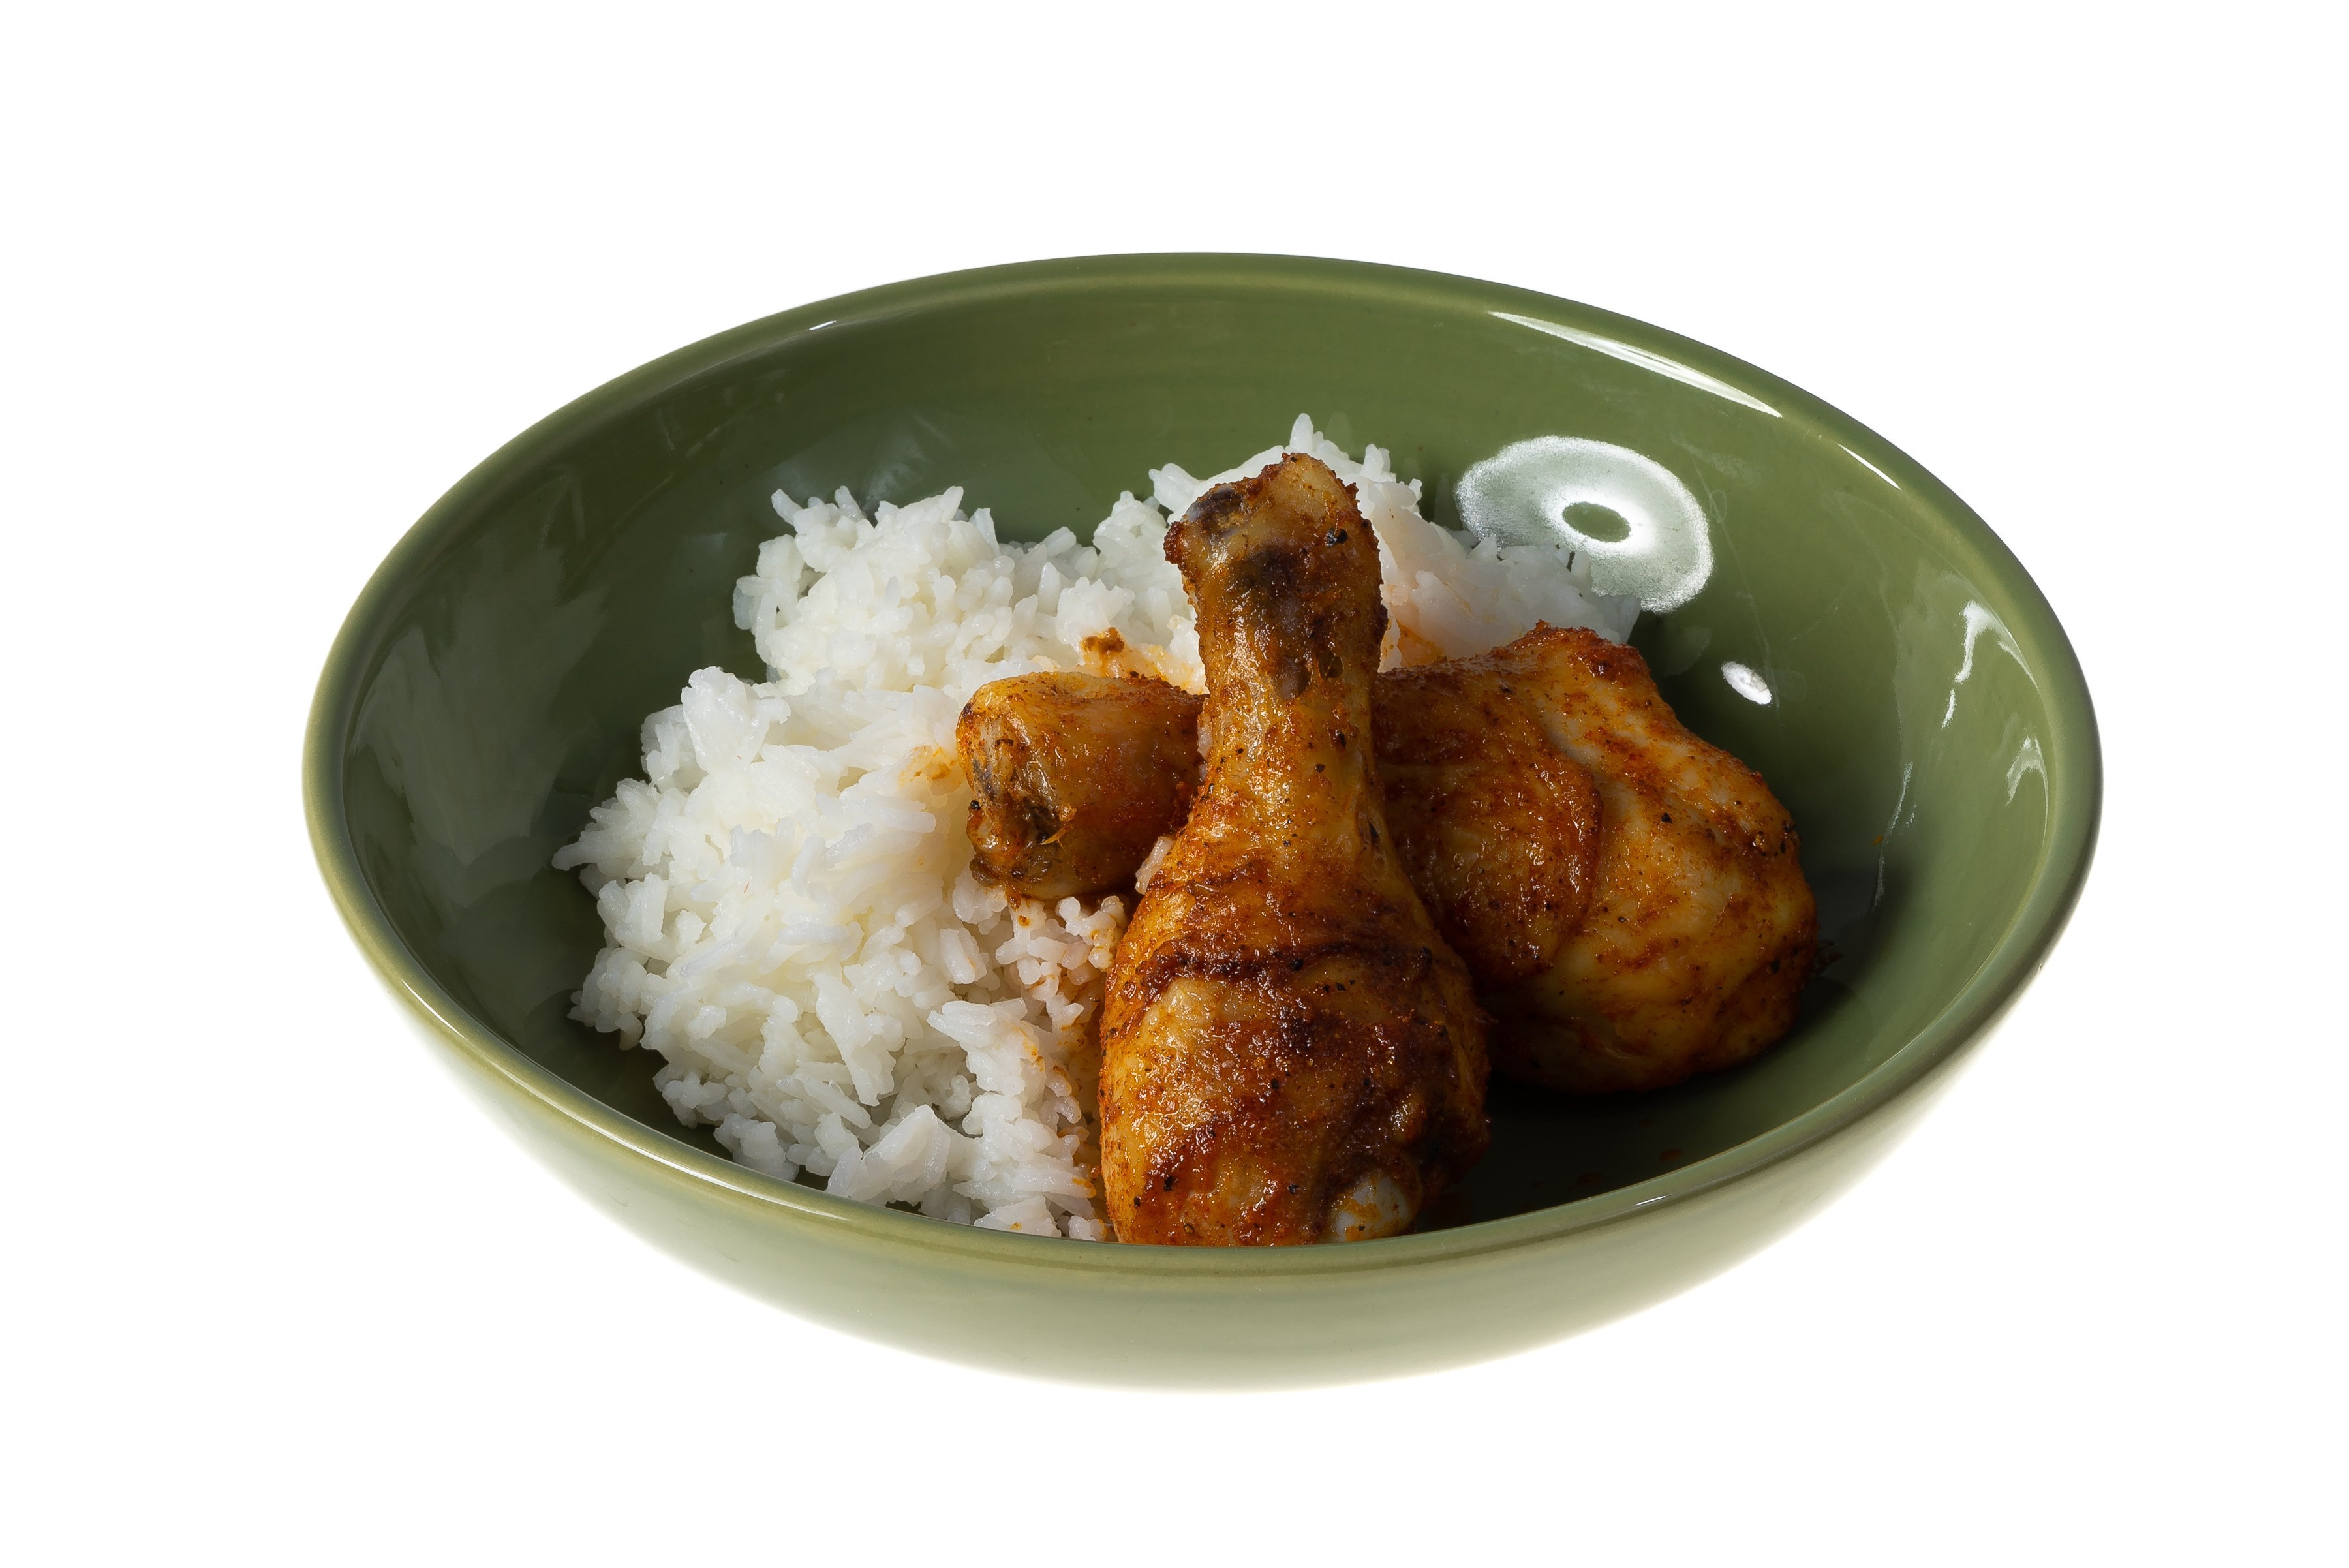 Курица с рисом в духовке (всегда рассыпчатый рис)